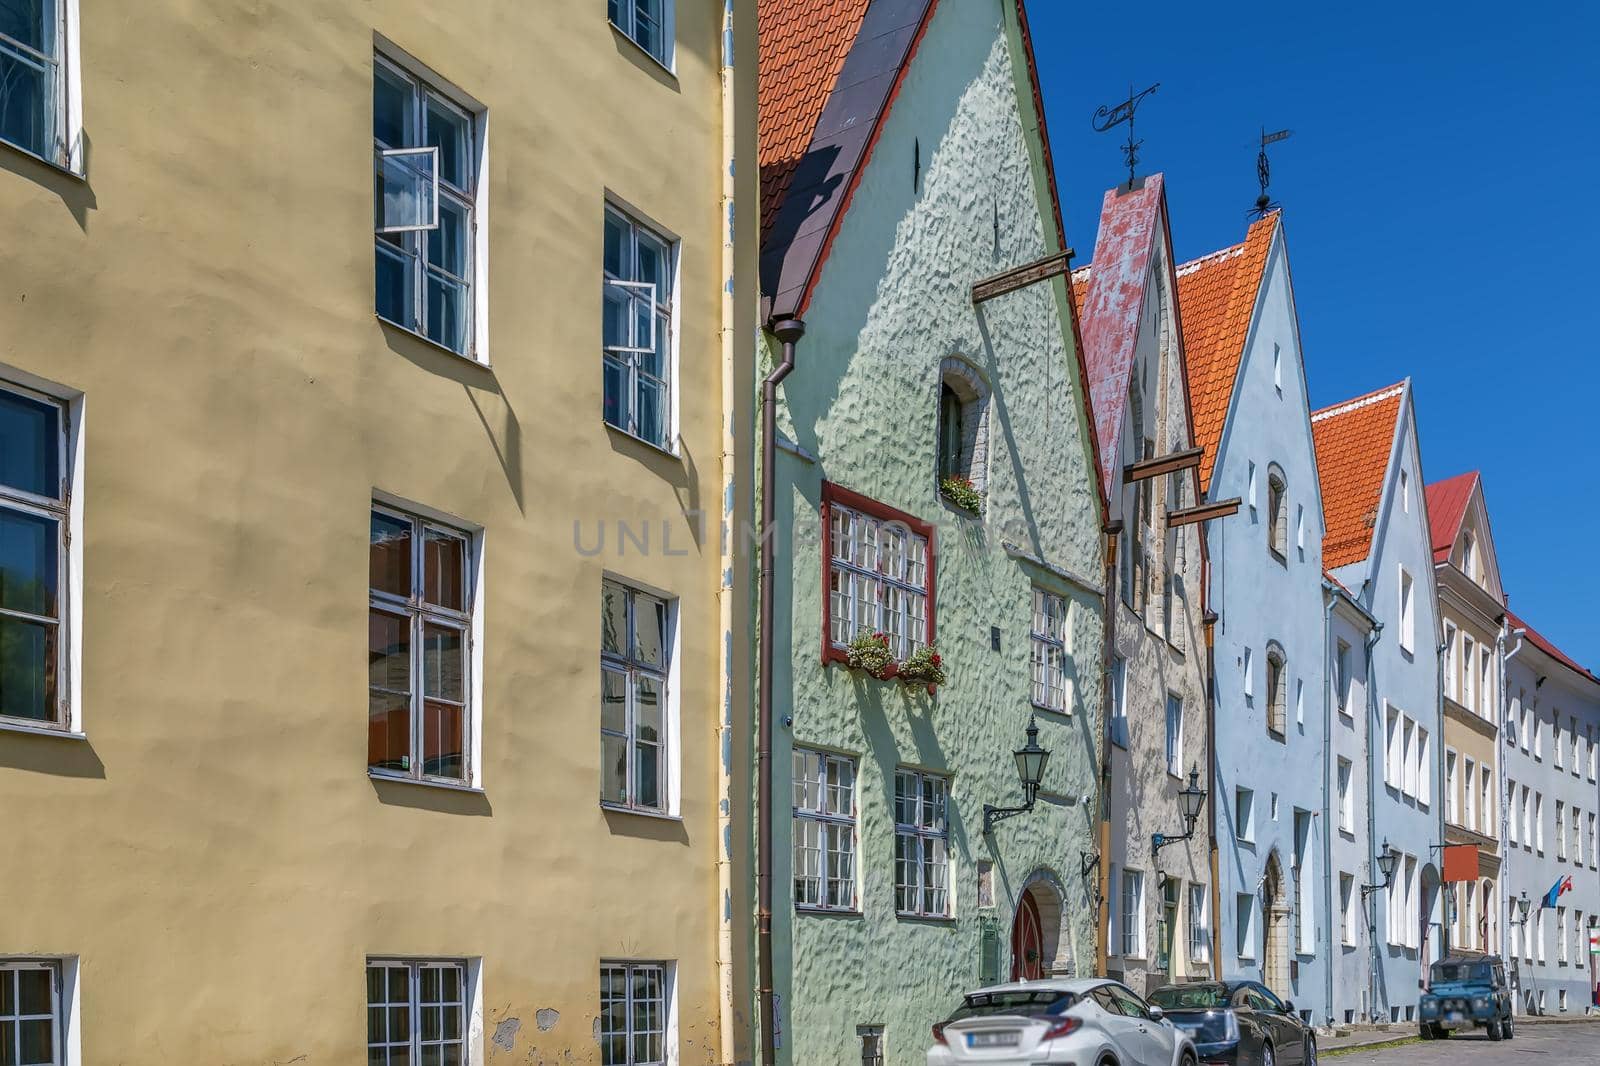 Street in Tallinn, Estonia by borisb17